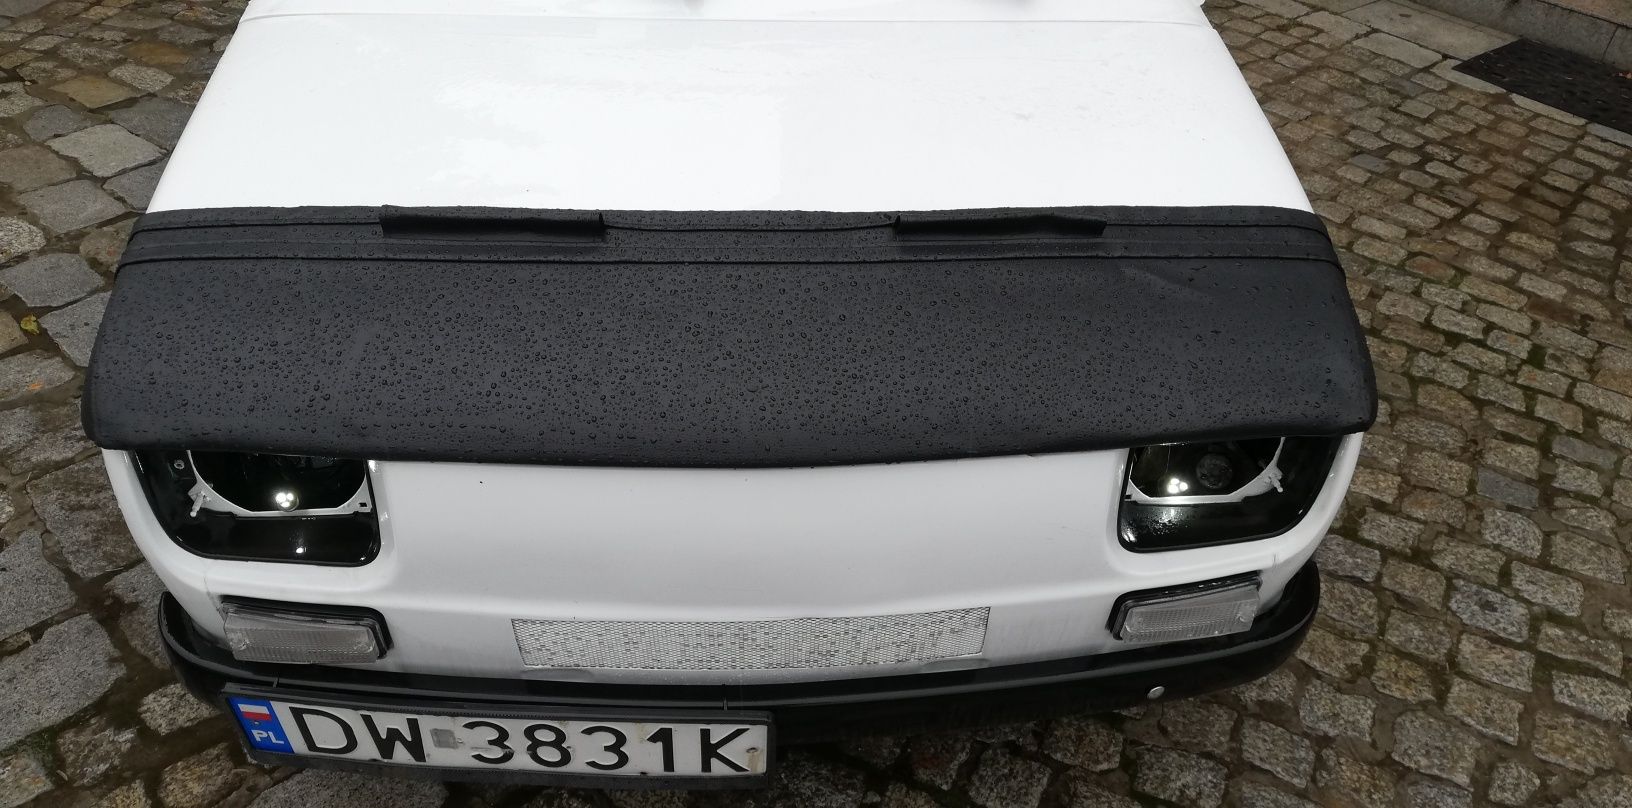 Fiat 126p bra osłona skóra maski przedniej tuning nowa